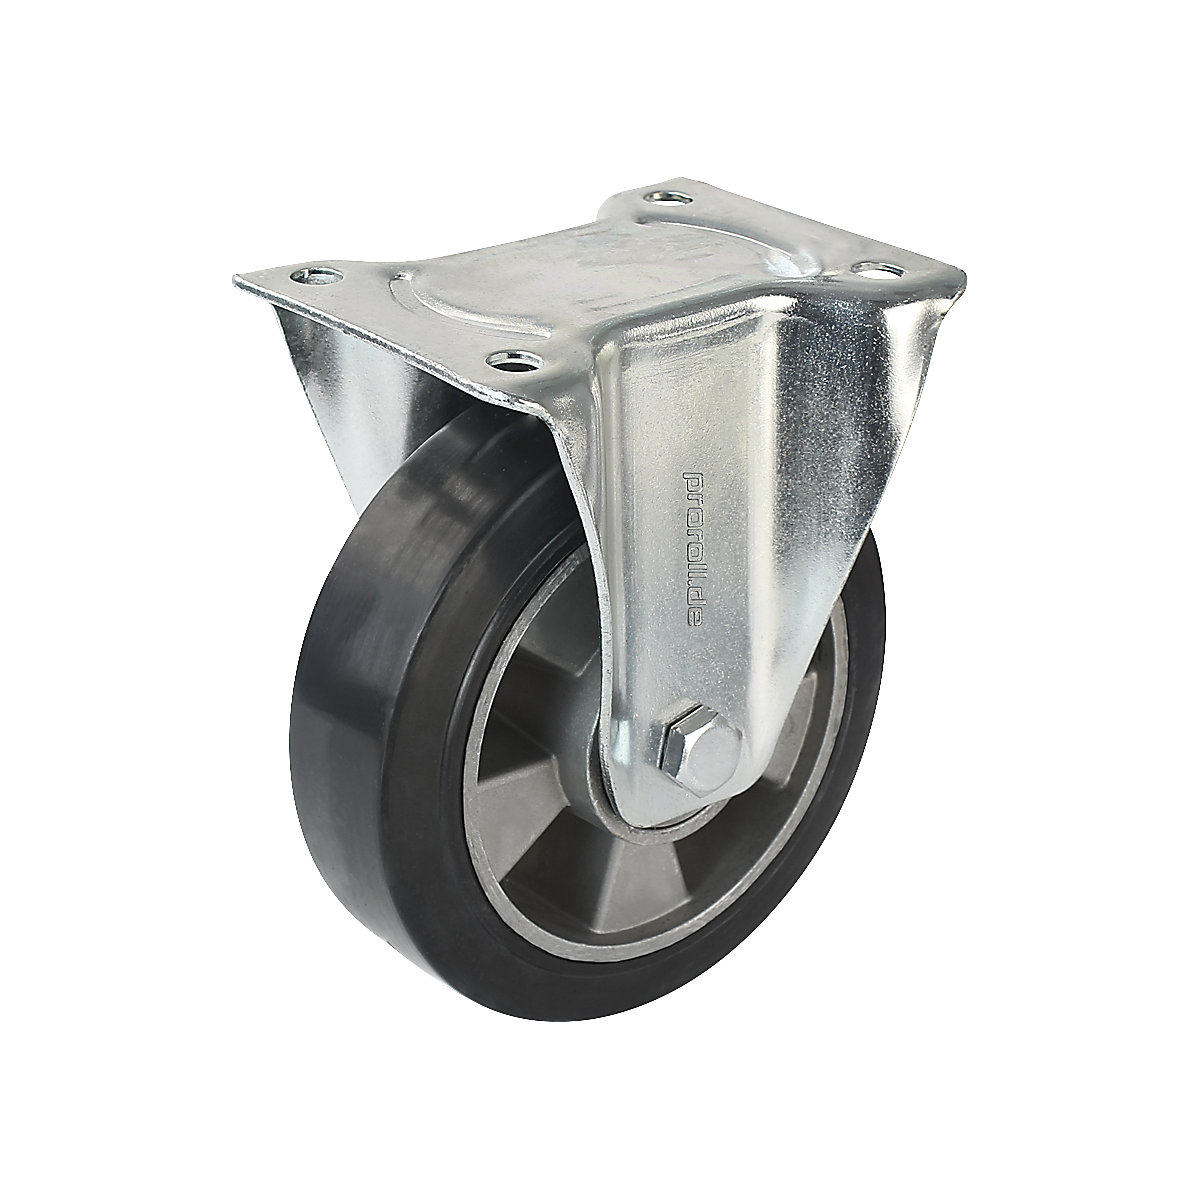 Elastični kotač od pune gume, u crnoj boji - Proroll